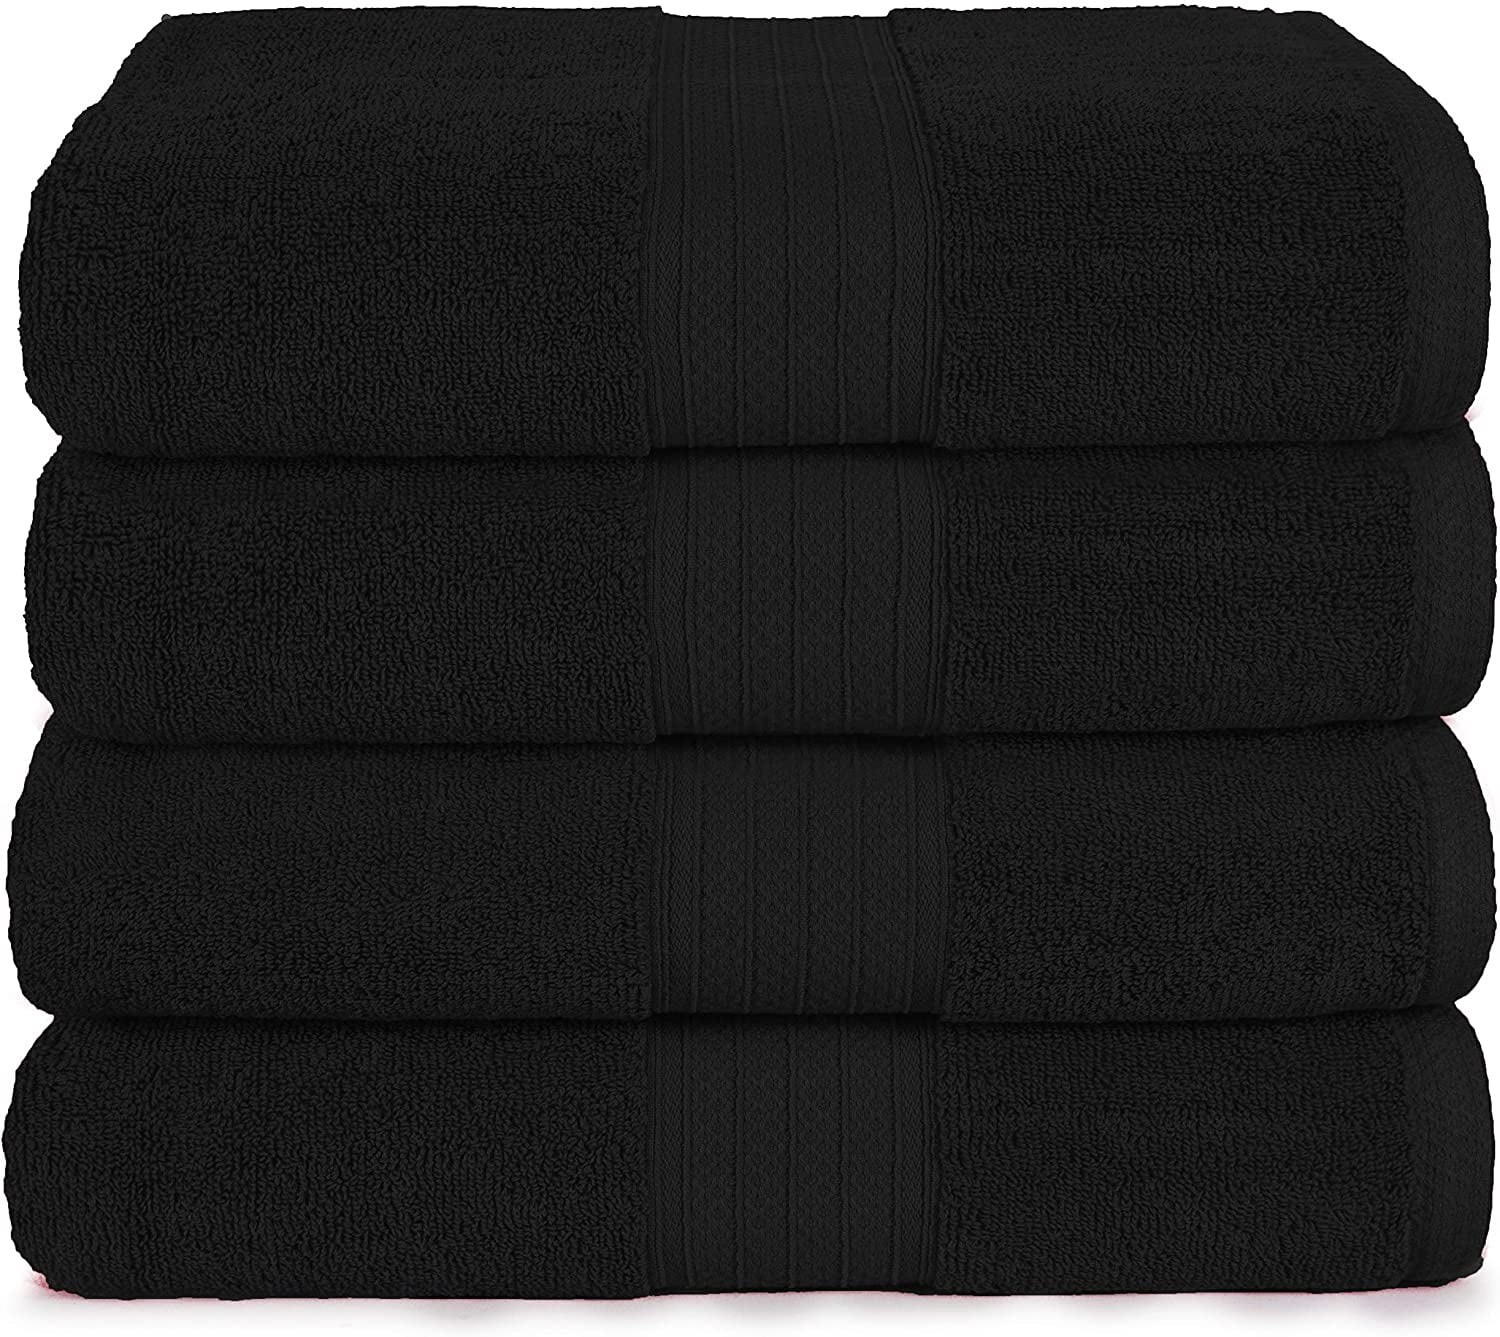 4 Pieces Bath Towel 600 Gsm Combed Cotton Bath Towel Sets Luxury Towels For Bath 